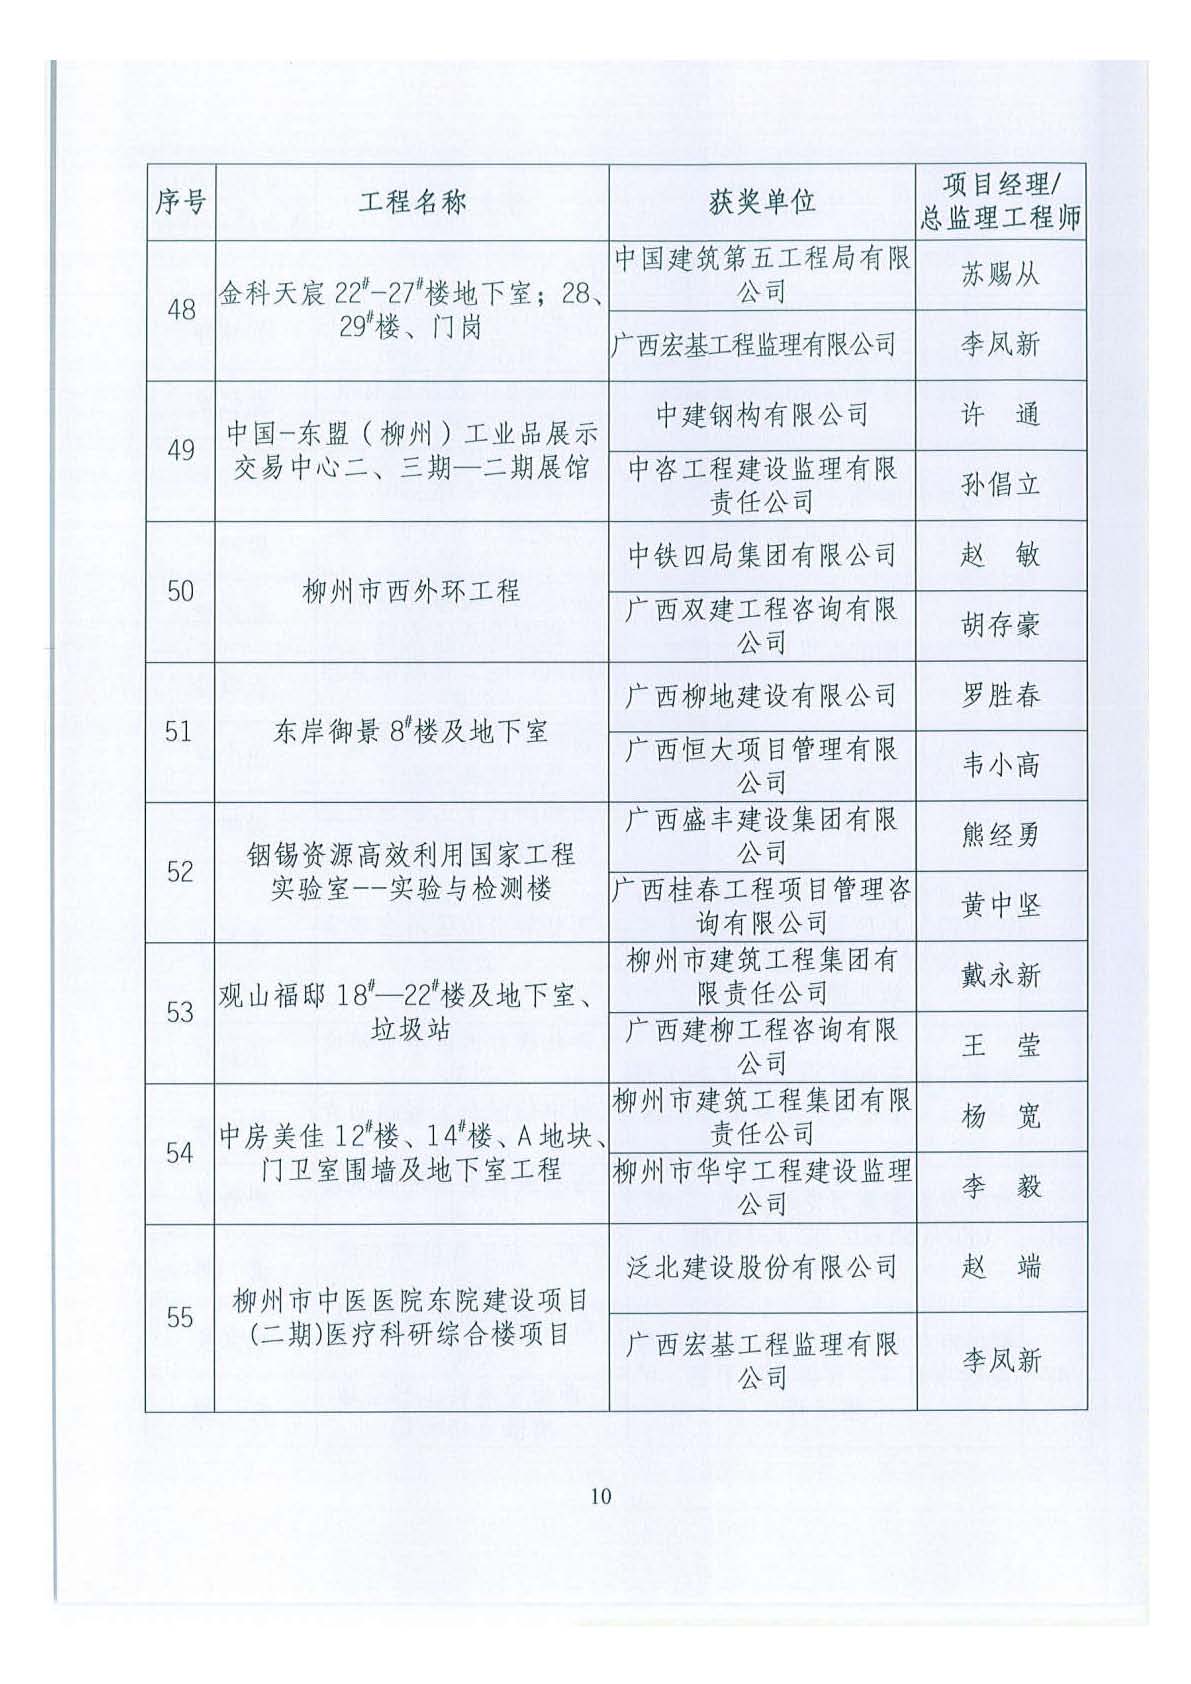 关于公布2018年下半年广西壮族自治区建设工程施工安全文明标准化工地的通知 _页面_10.jpg